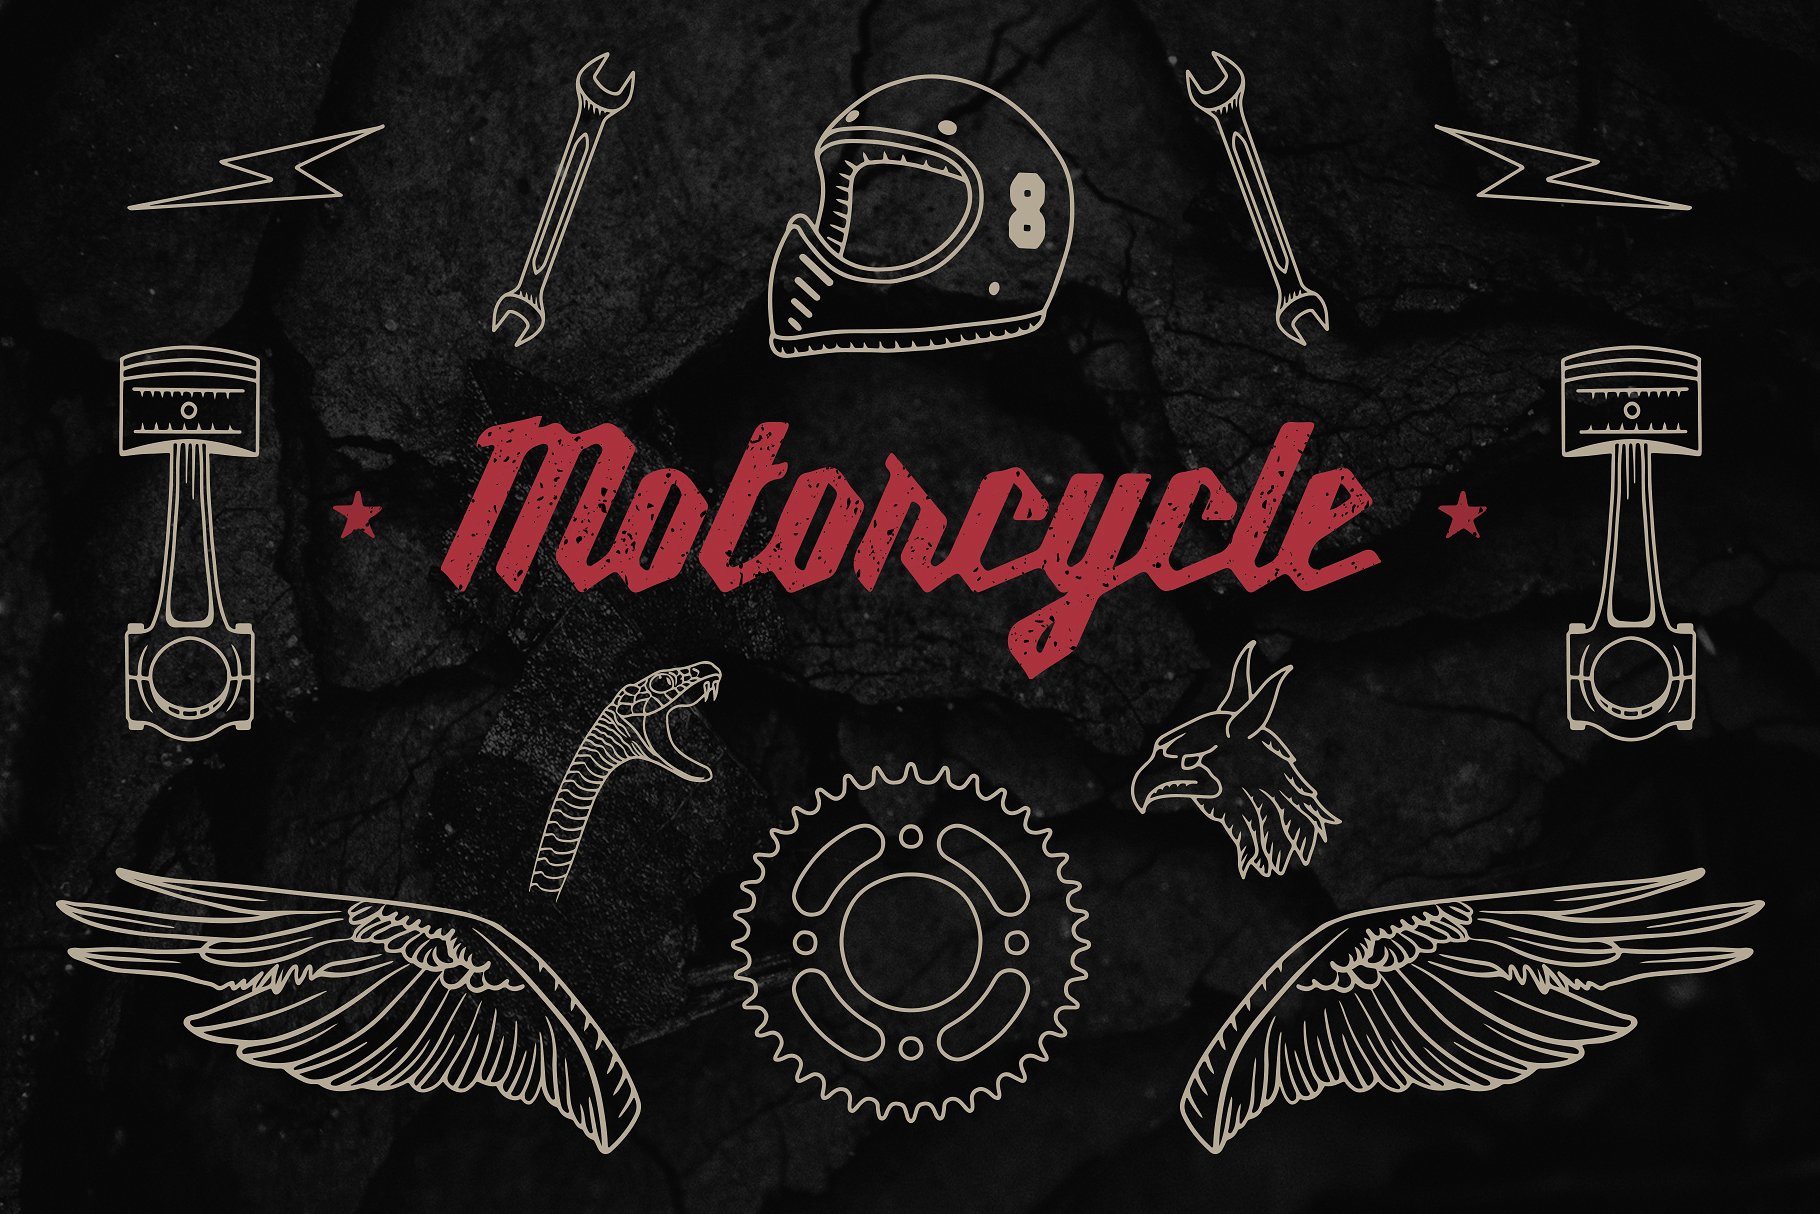 复古手绘标志设计素材Vintage Motorcycle E